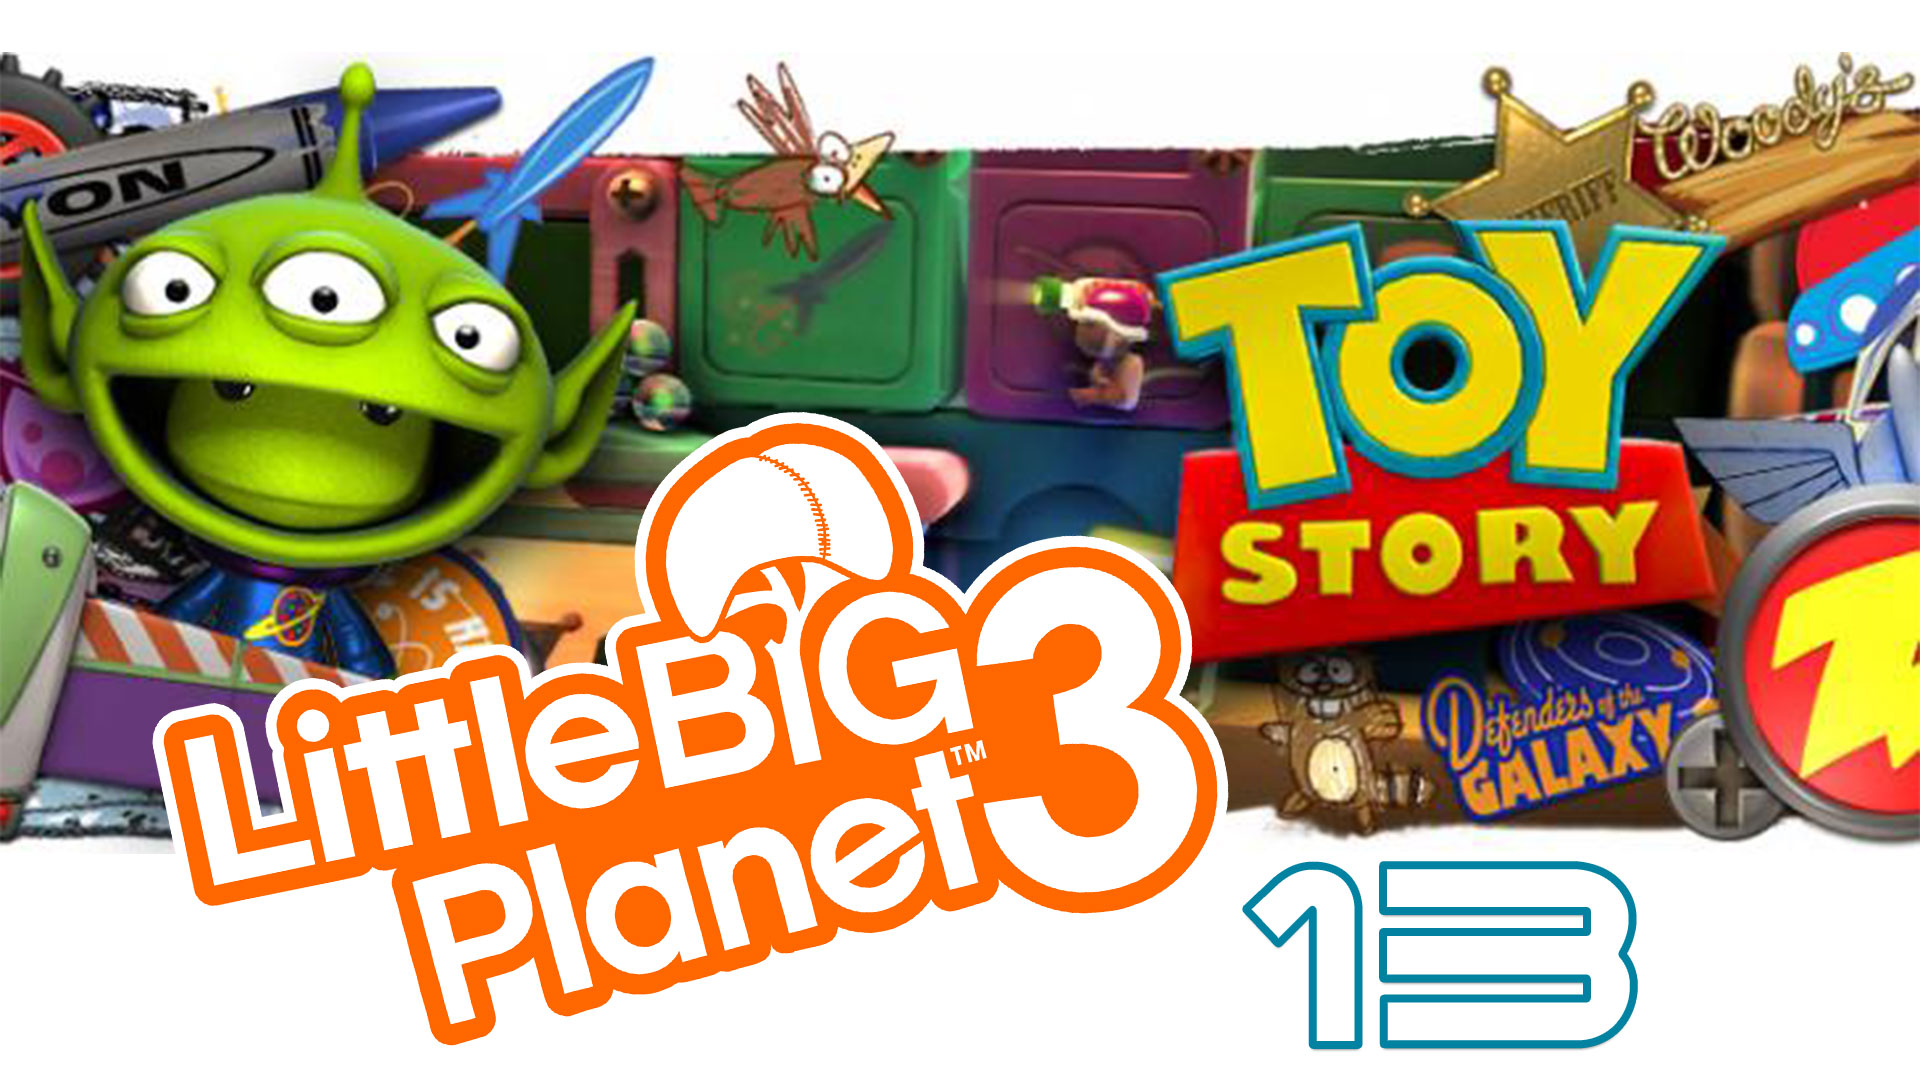 LittleBigPlanet 3 - Сезон 2 - Кооператив - История игрушек ч. 4 - Прохождение [#13] | PS4 (2016 г.)